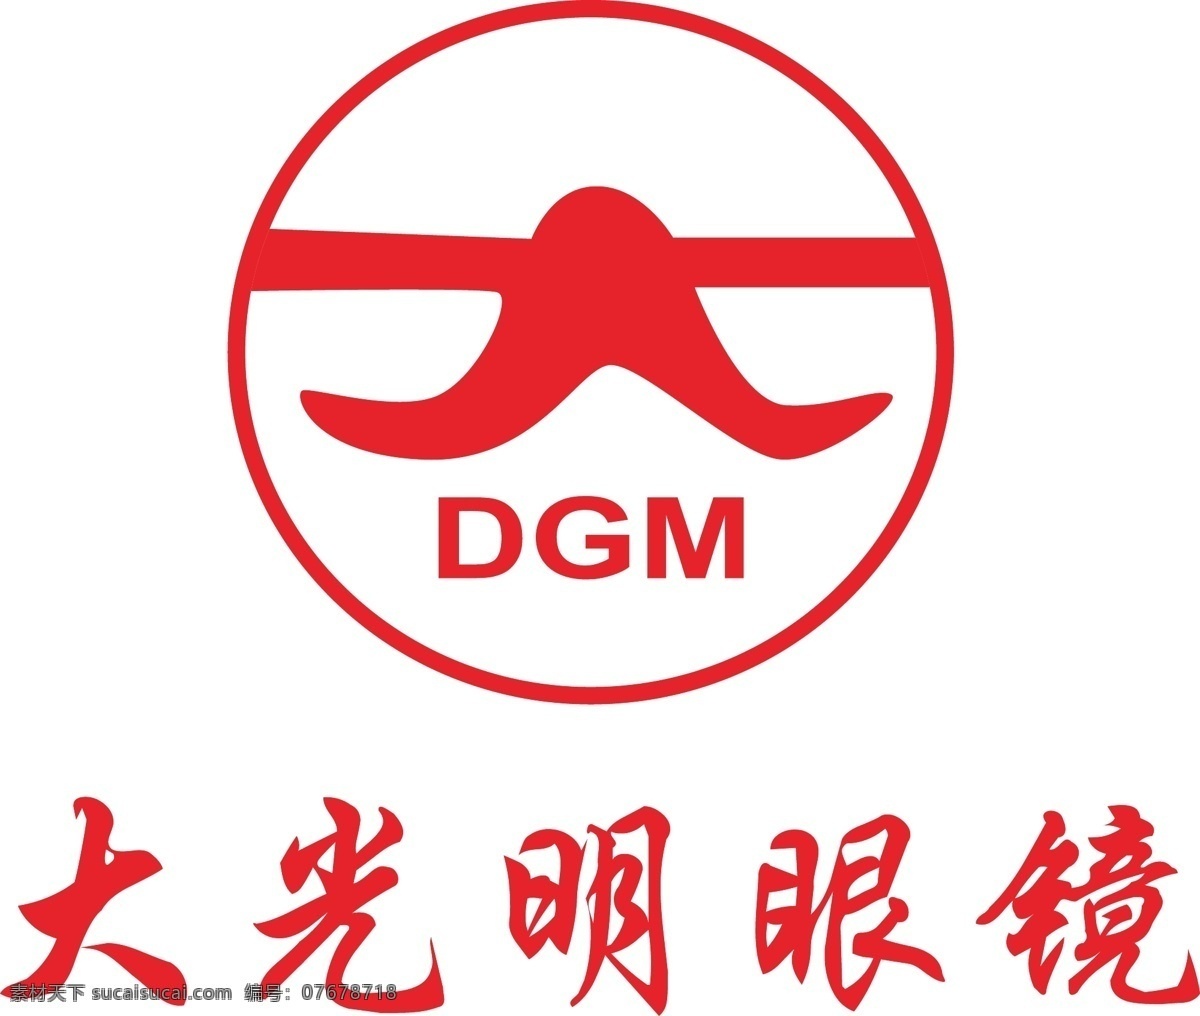 大光明 眼镜 大 dgm 大光 明 logo 大光明眼镜标 红色标志 logo设计